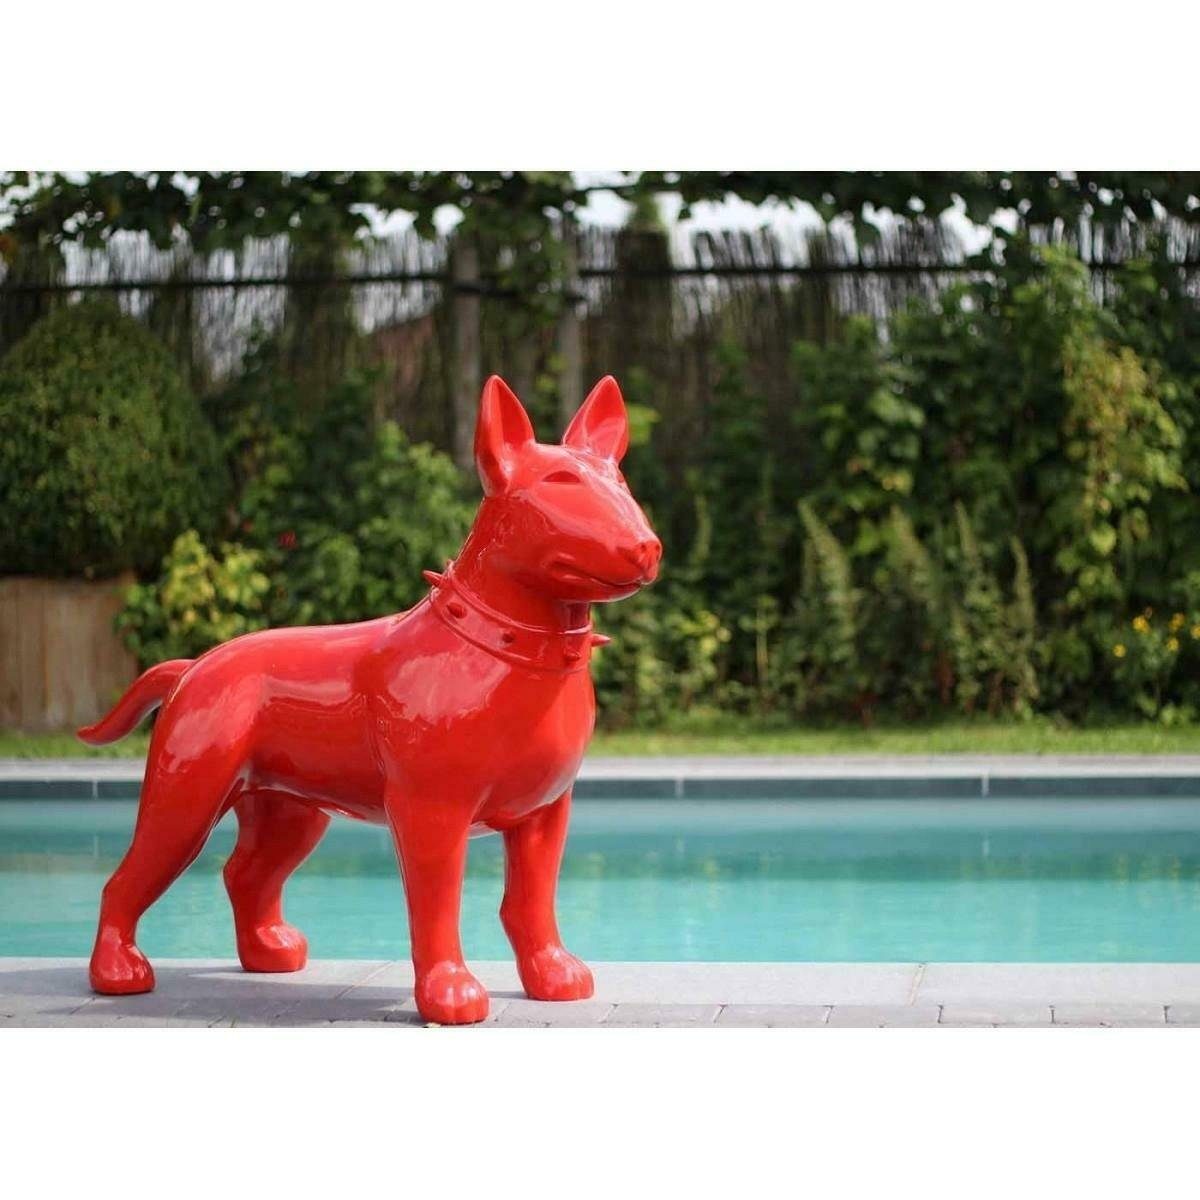 Dekoration Designer Skulptur Moderne Figur Figuren JVmoebel Skulptur, Skulpturen Statue Garten Hund